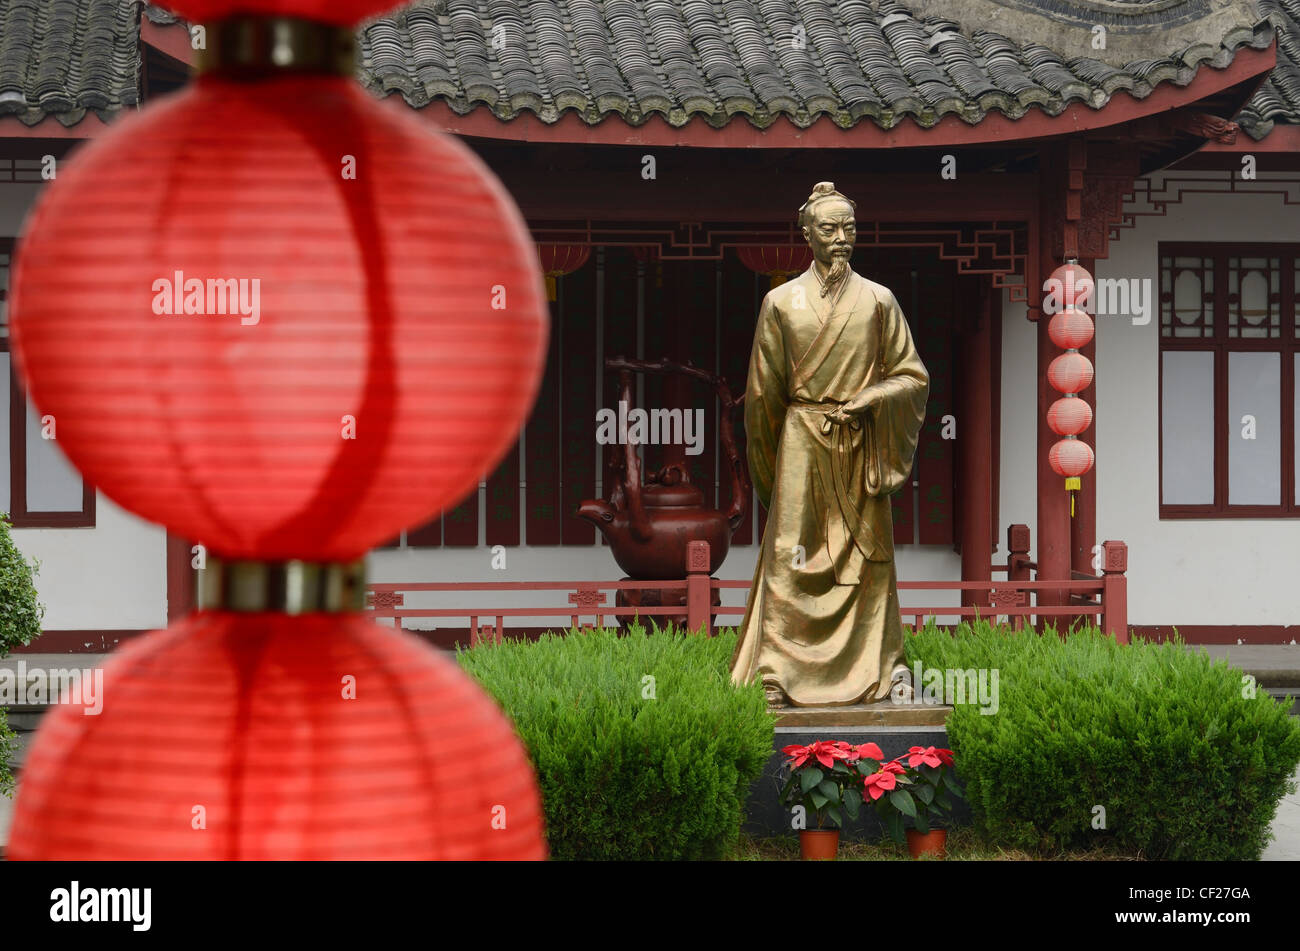 Statue of Lu Yu teamaster of China at Mei Jia Wu tea plantation Long Jing area of Hangzhou Stock Photo